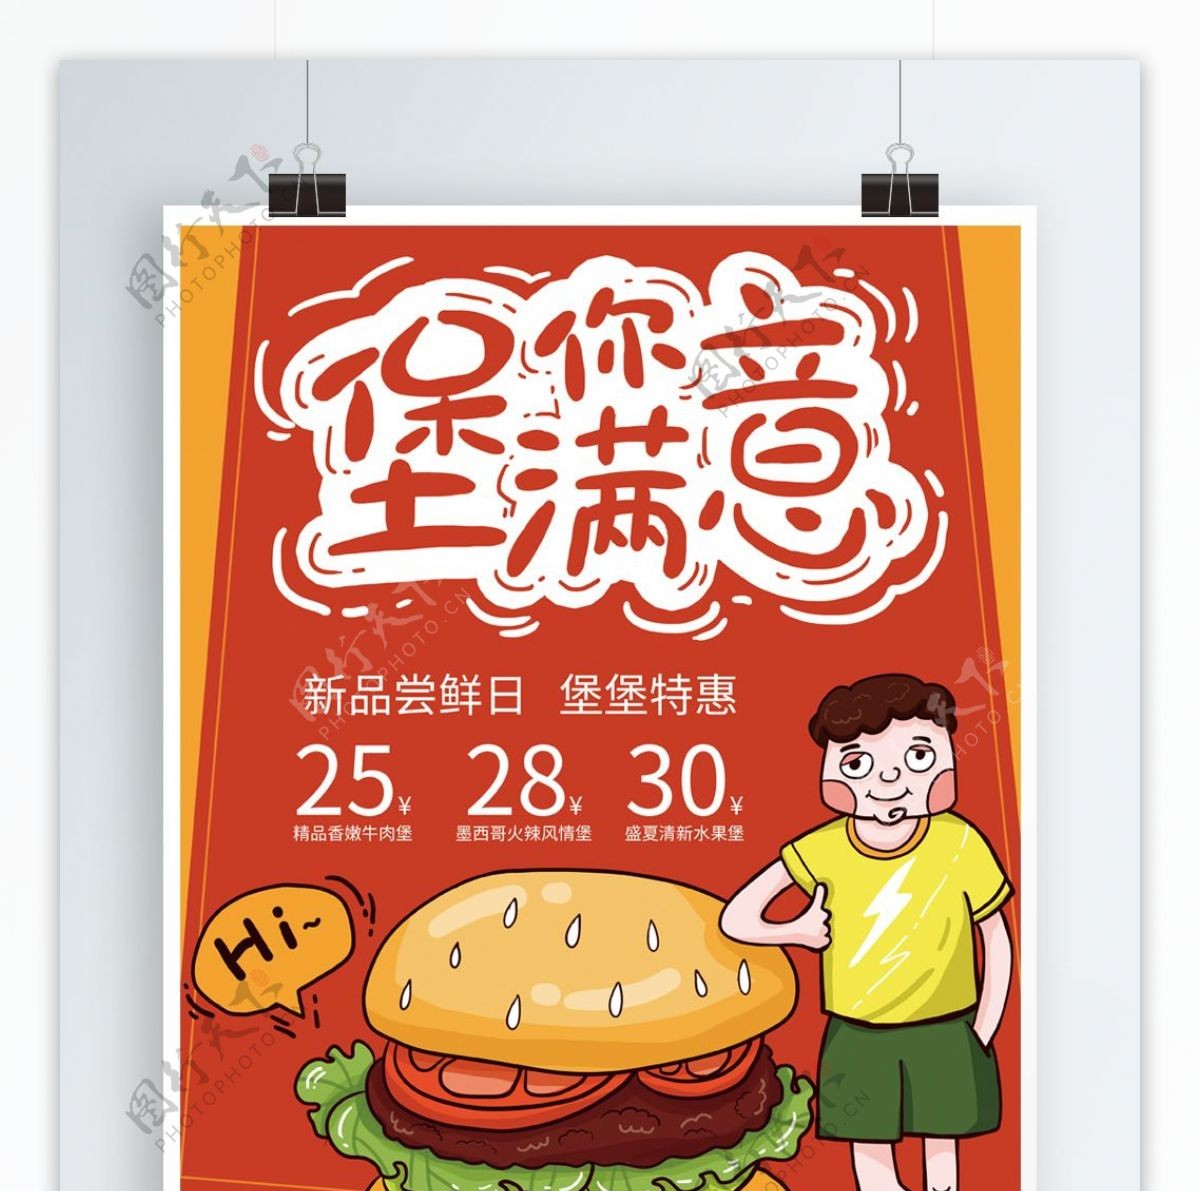 原创卡通涂鸦POP风格汉堡美食海报